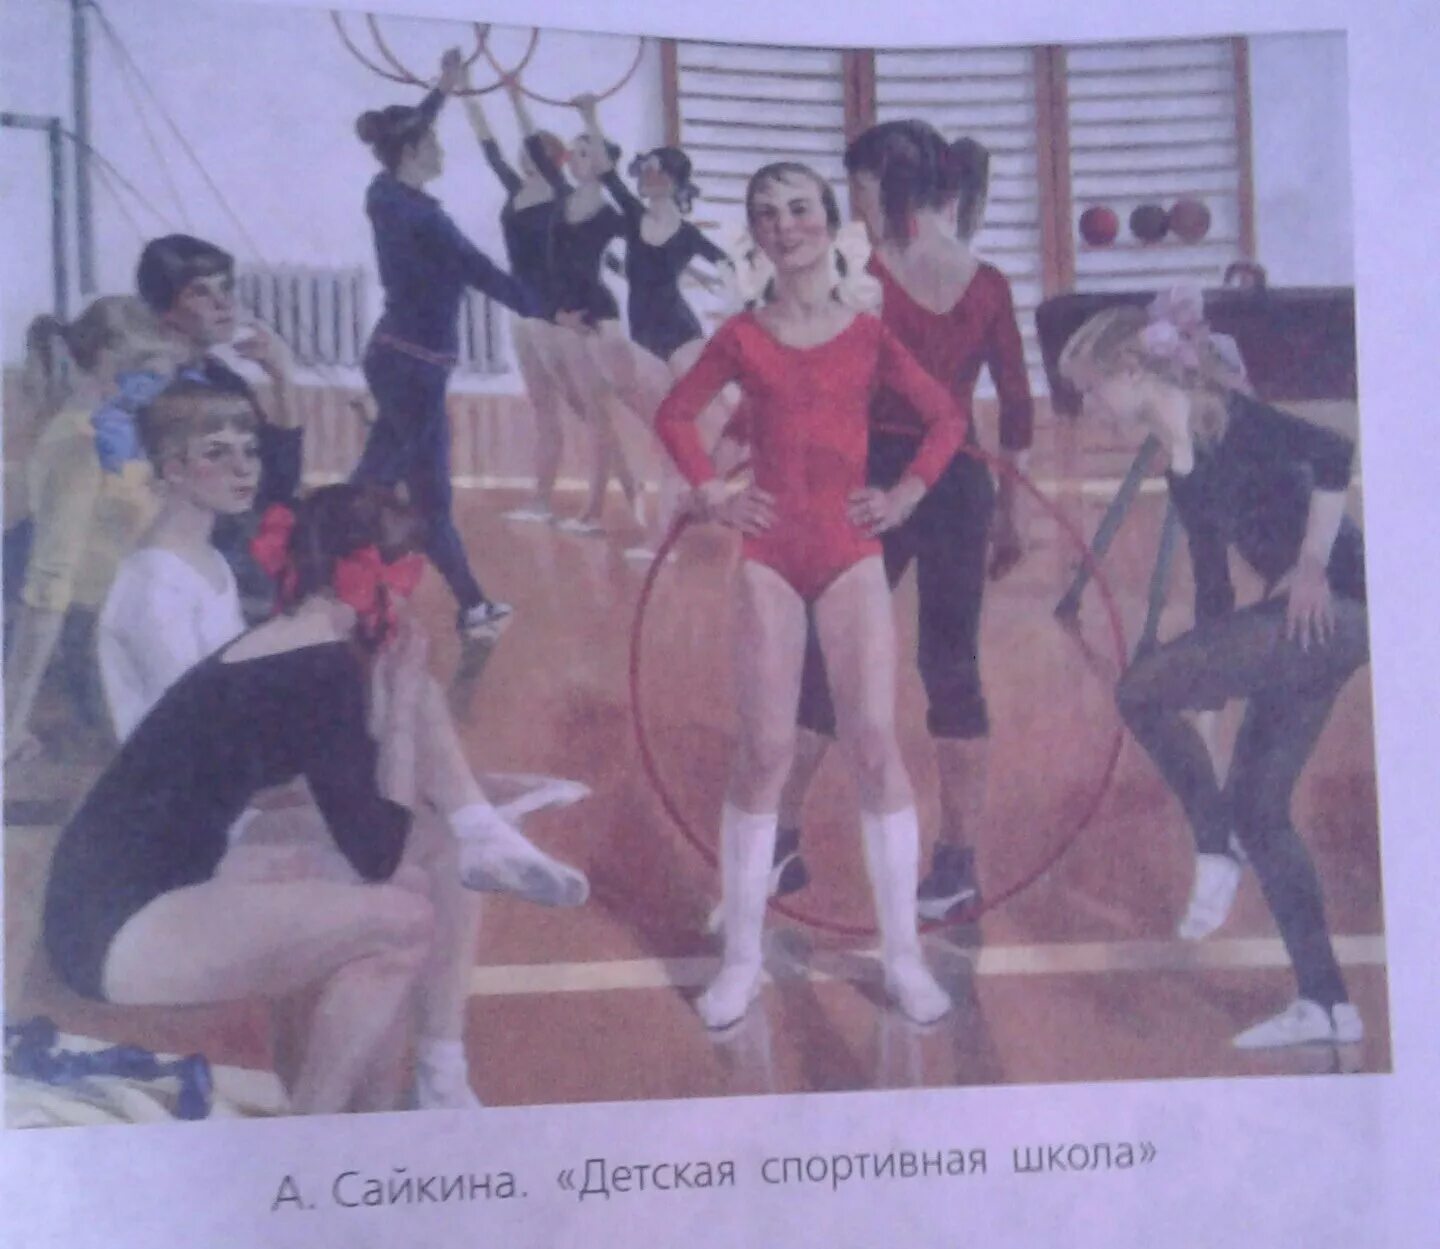 Описание картины а сайкина детская спортивная школа. Картина Сайкиной детская спортивная школа.